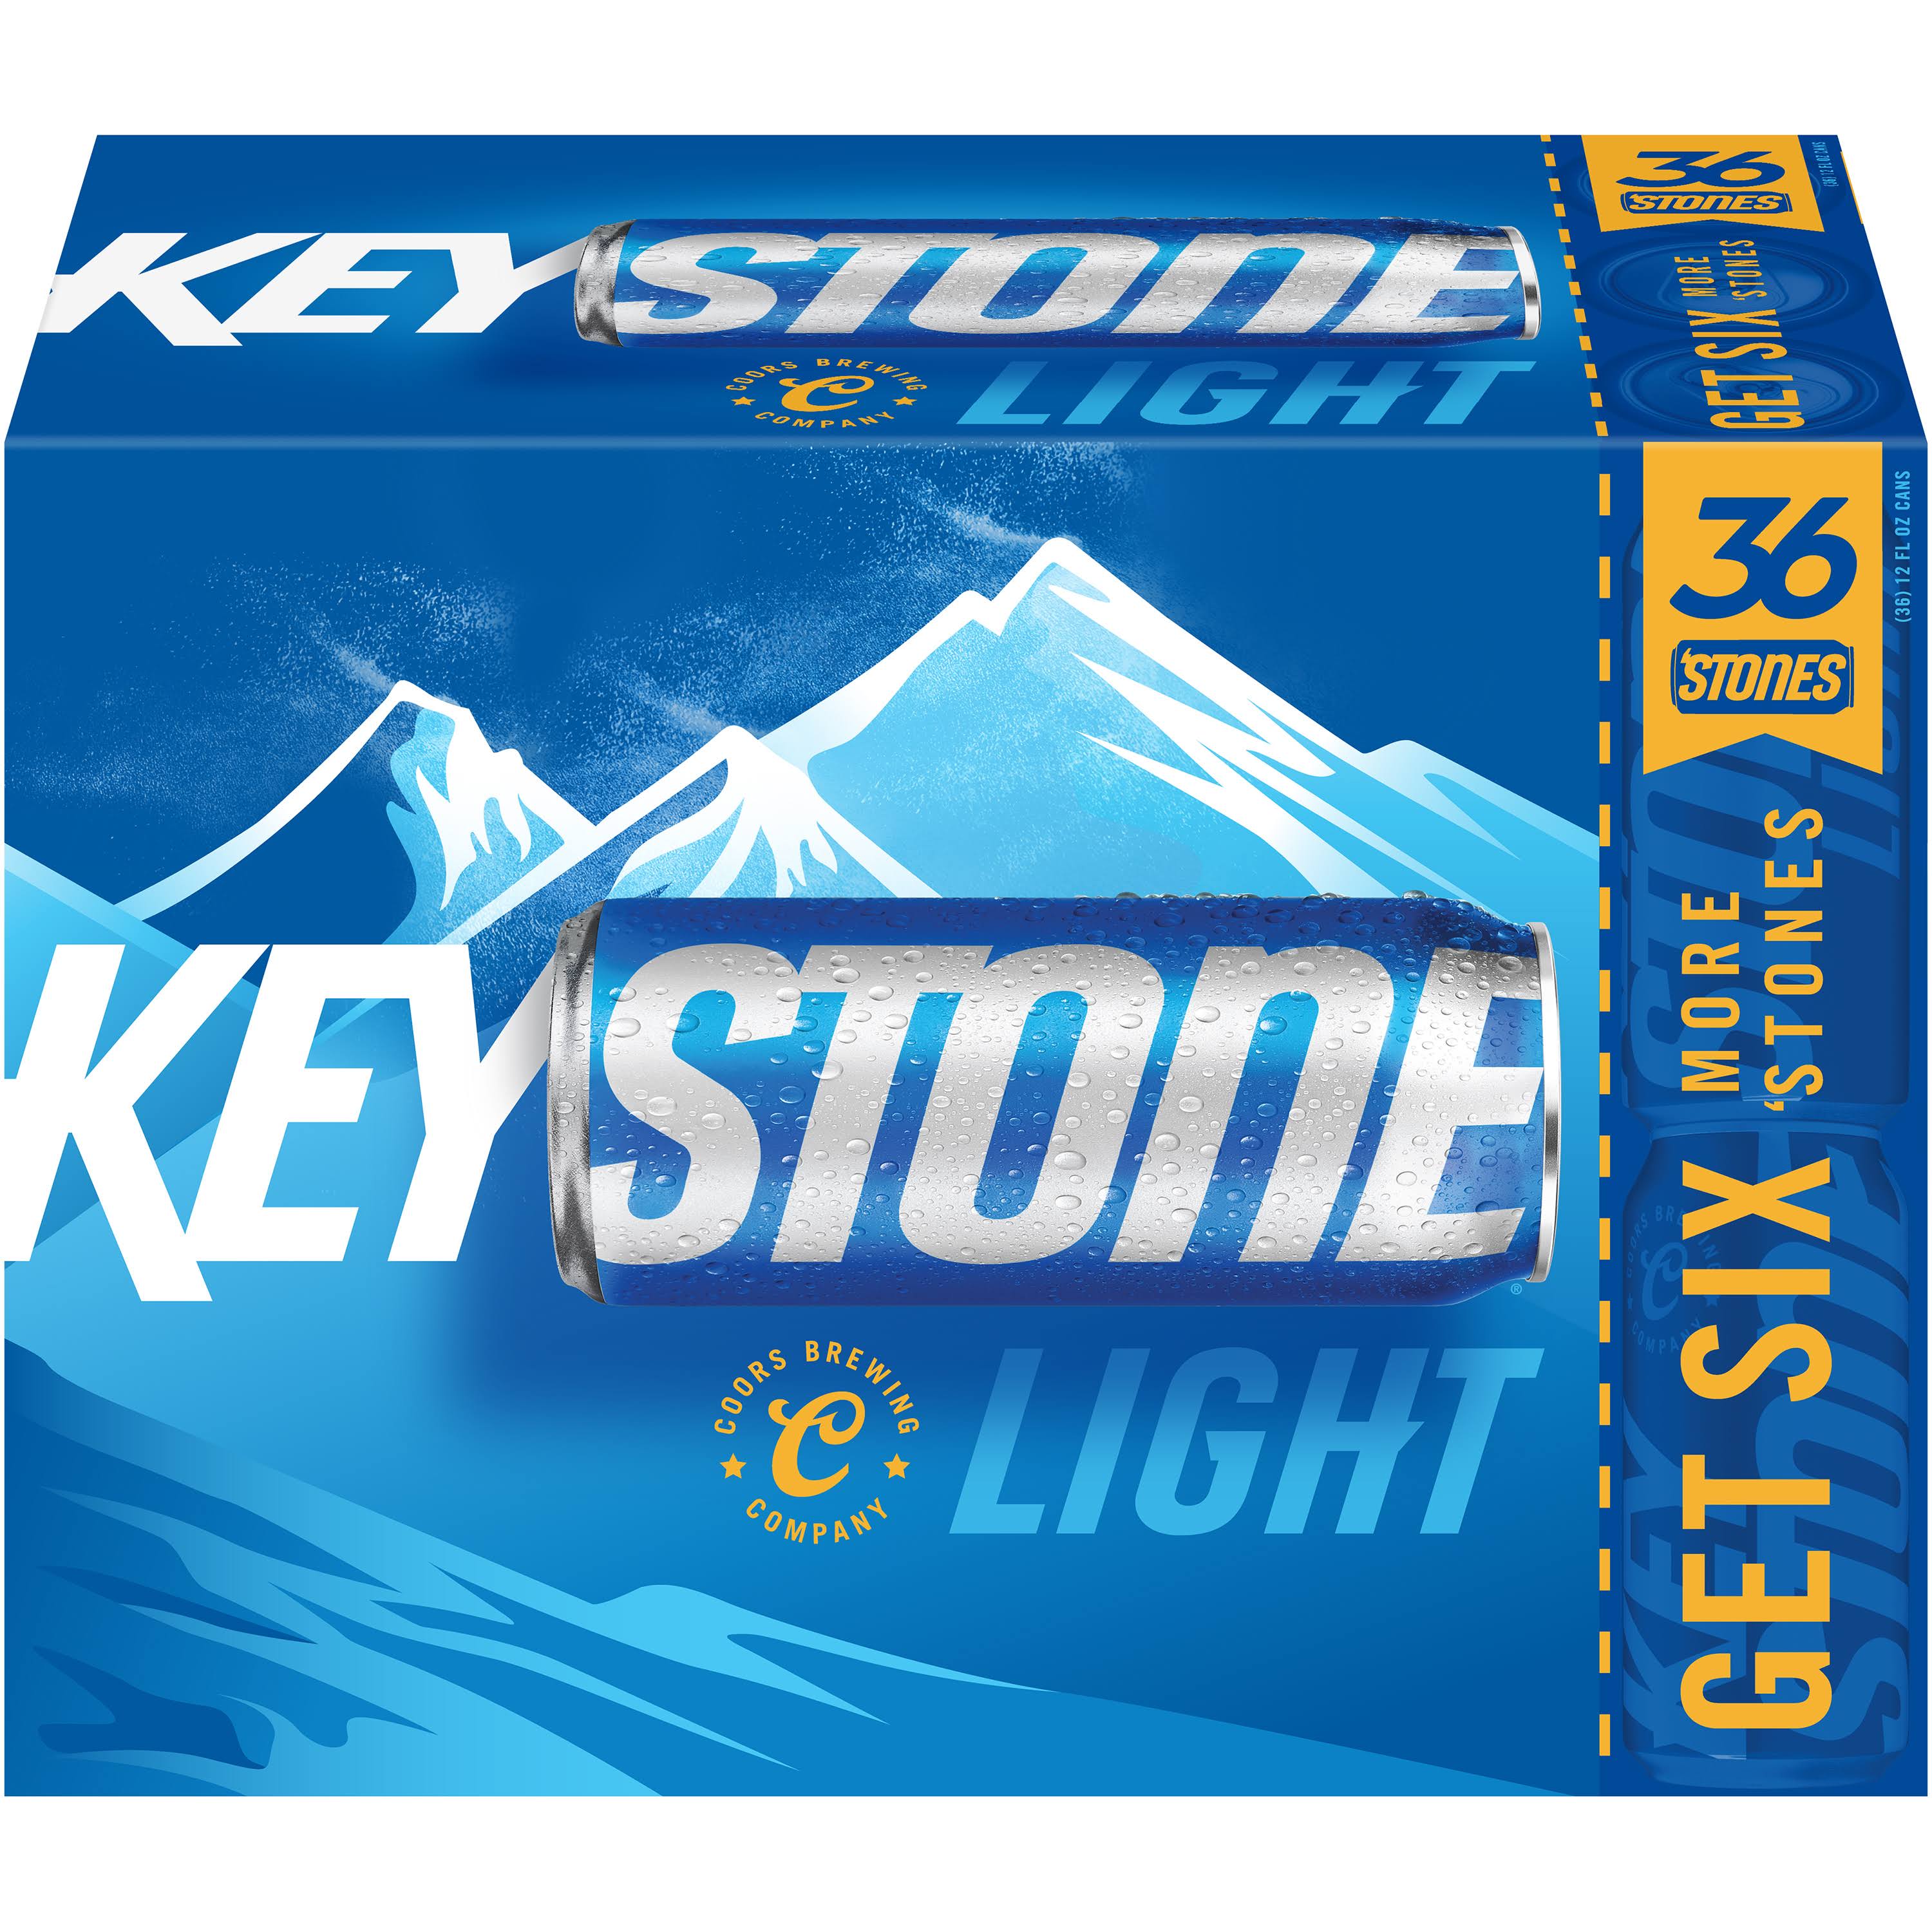 Keystone Beer, Light - 36 pack, 12 fl oz cans